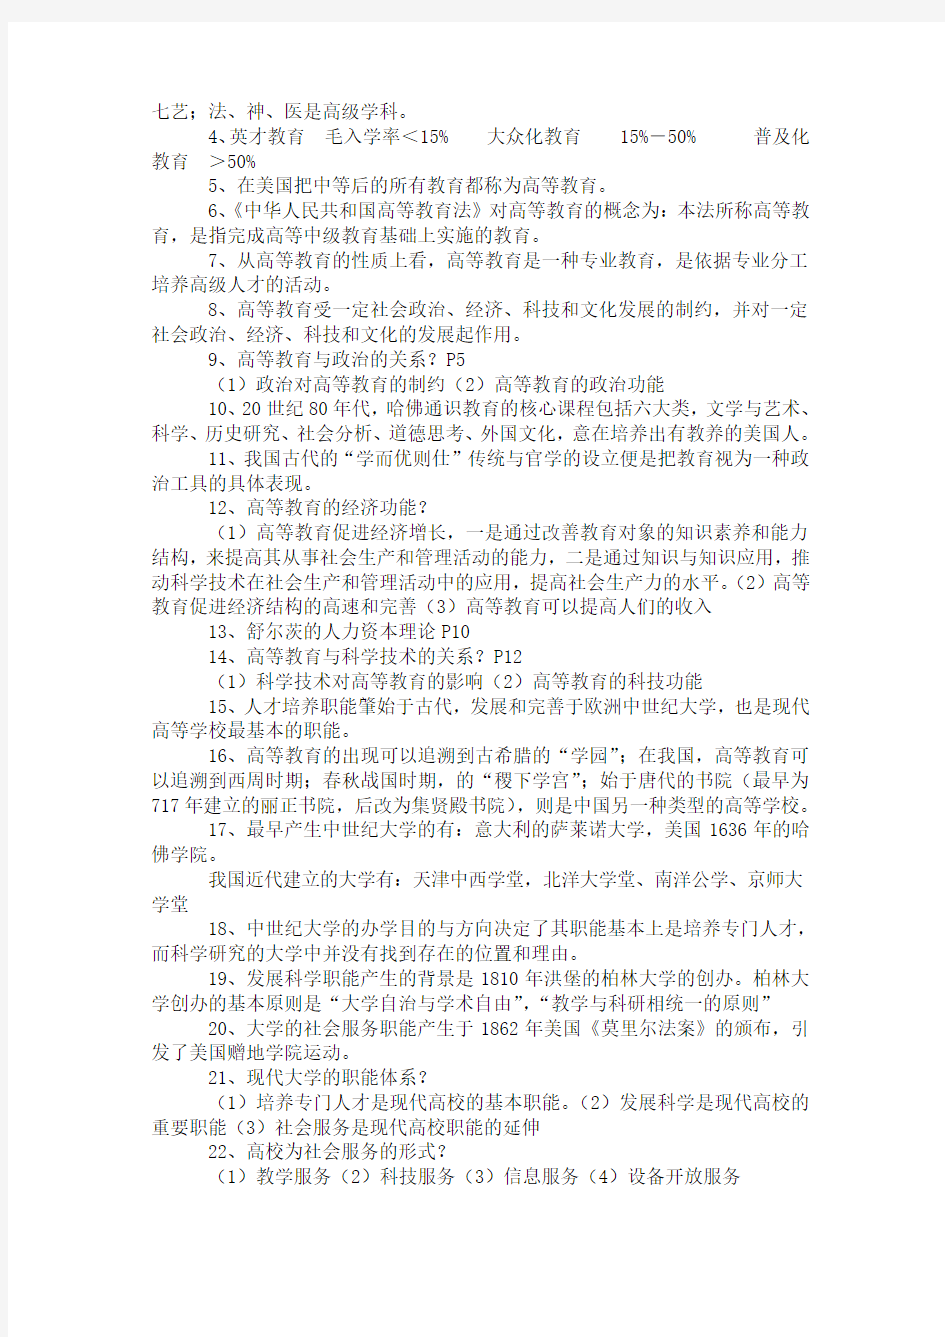 江苏高校教师资格证考试资料总结